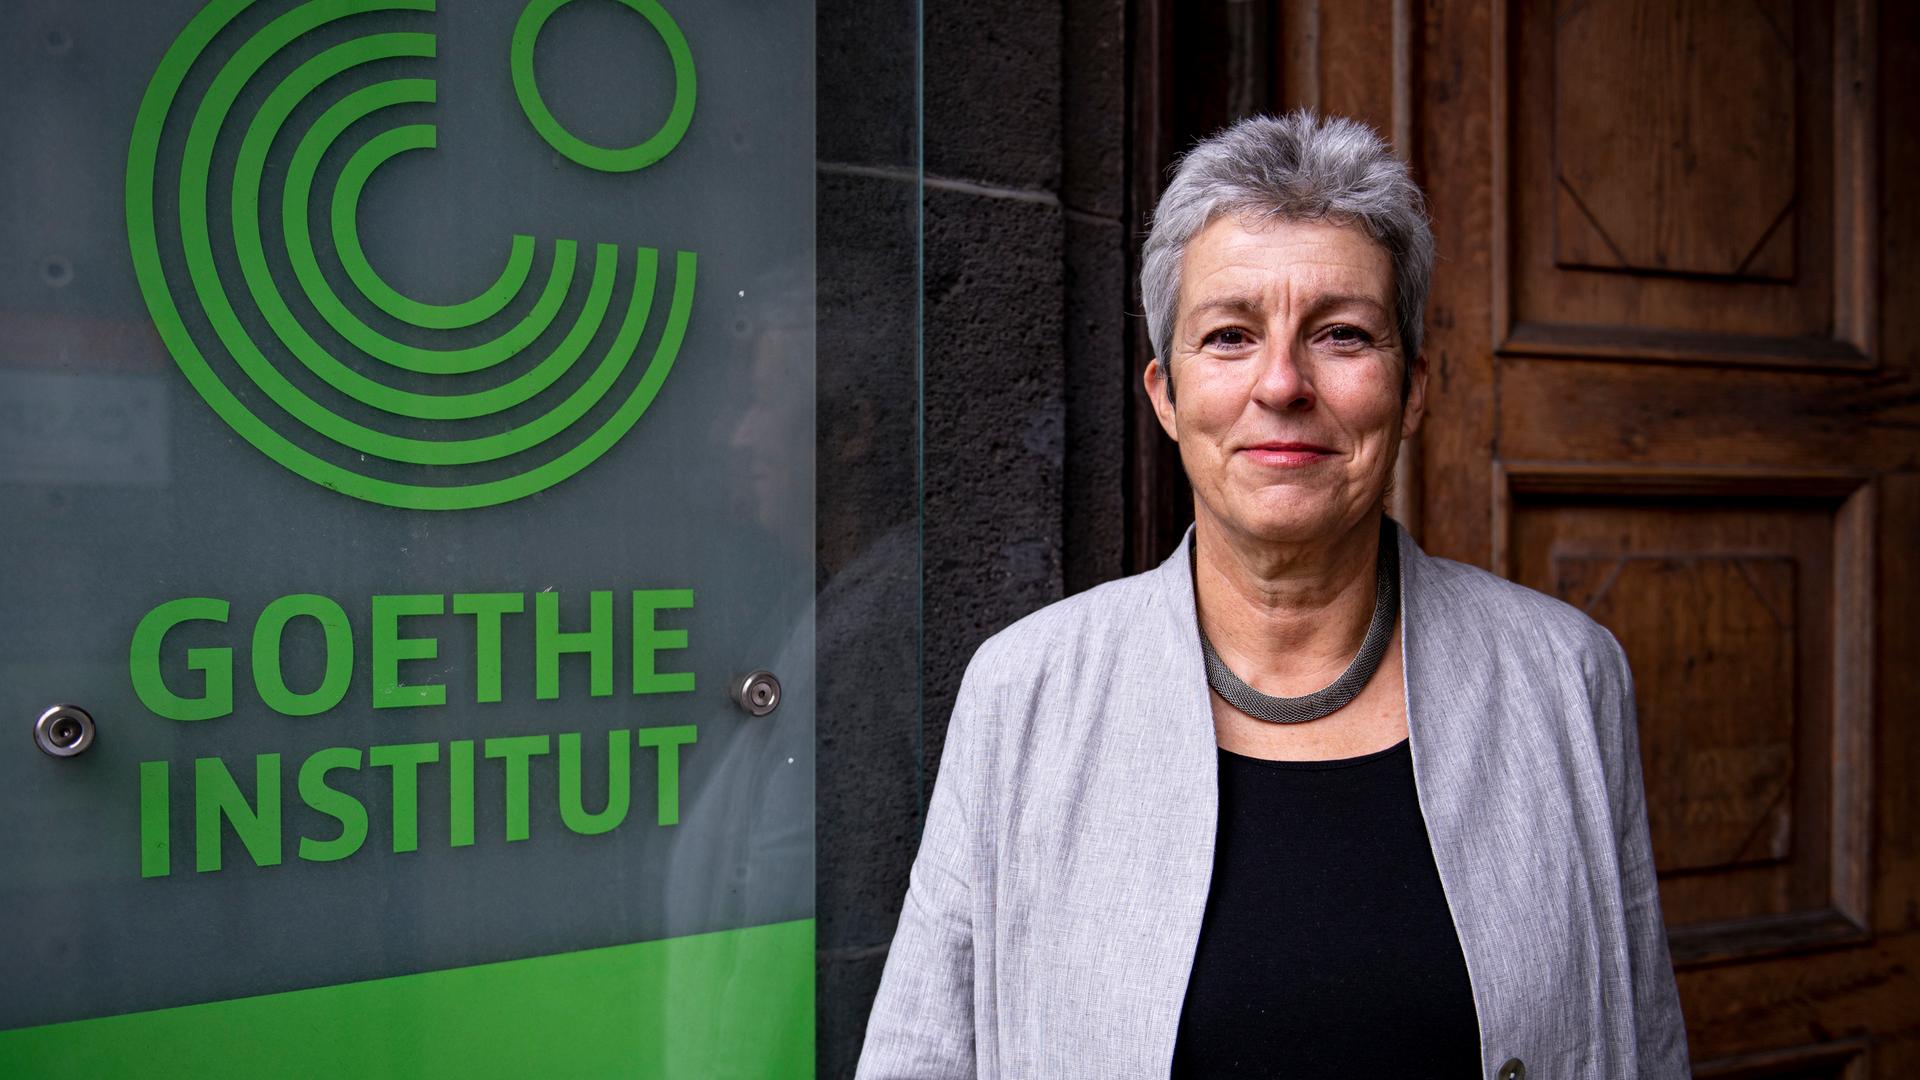 Carola Lentz,  Präsidentin des Goethe-Instituts, mit grauem Kurzhaarschnitt, in hellgrauem Sakko, steht neben dem Türschild des Goethe-Instituts in Berlin.